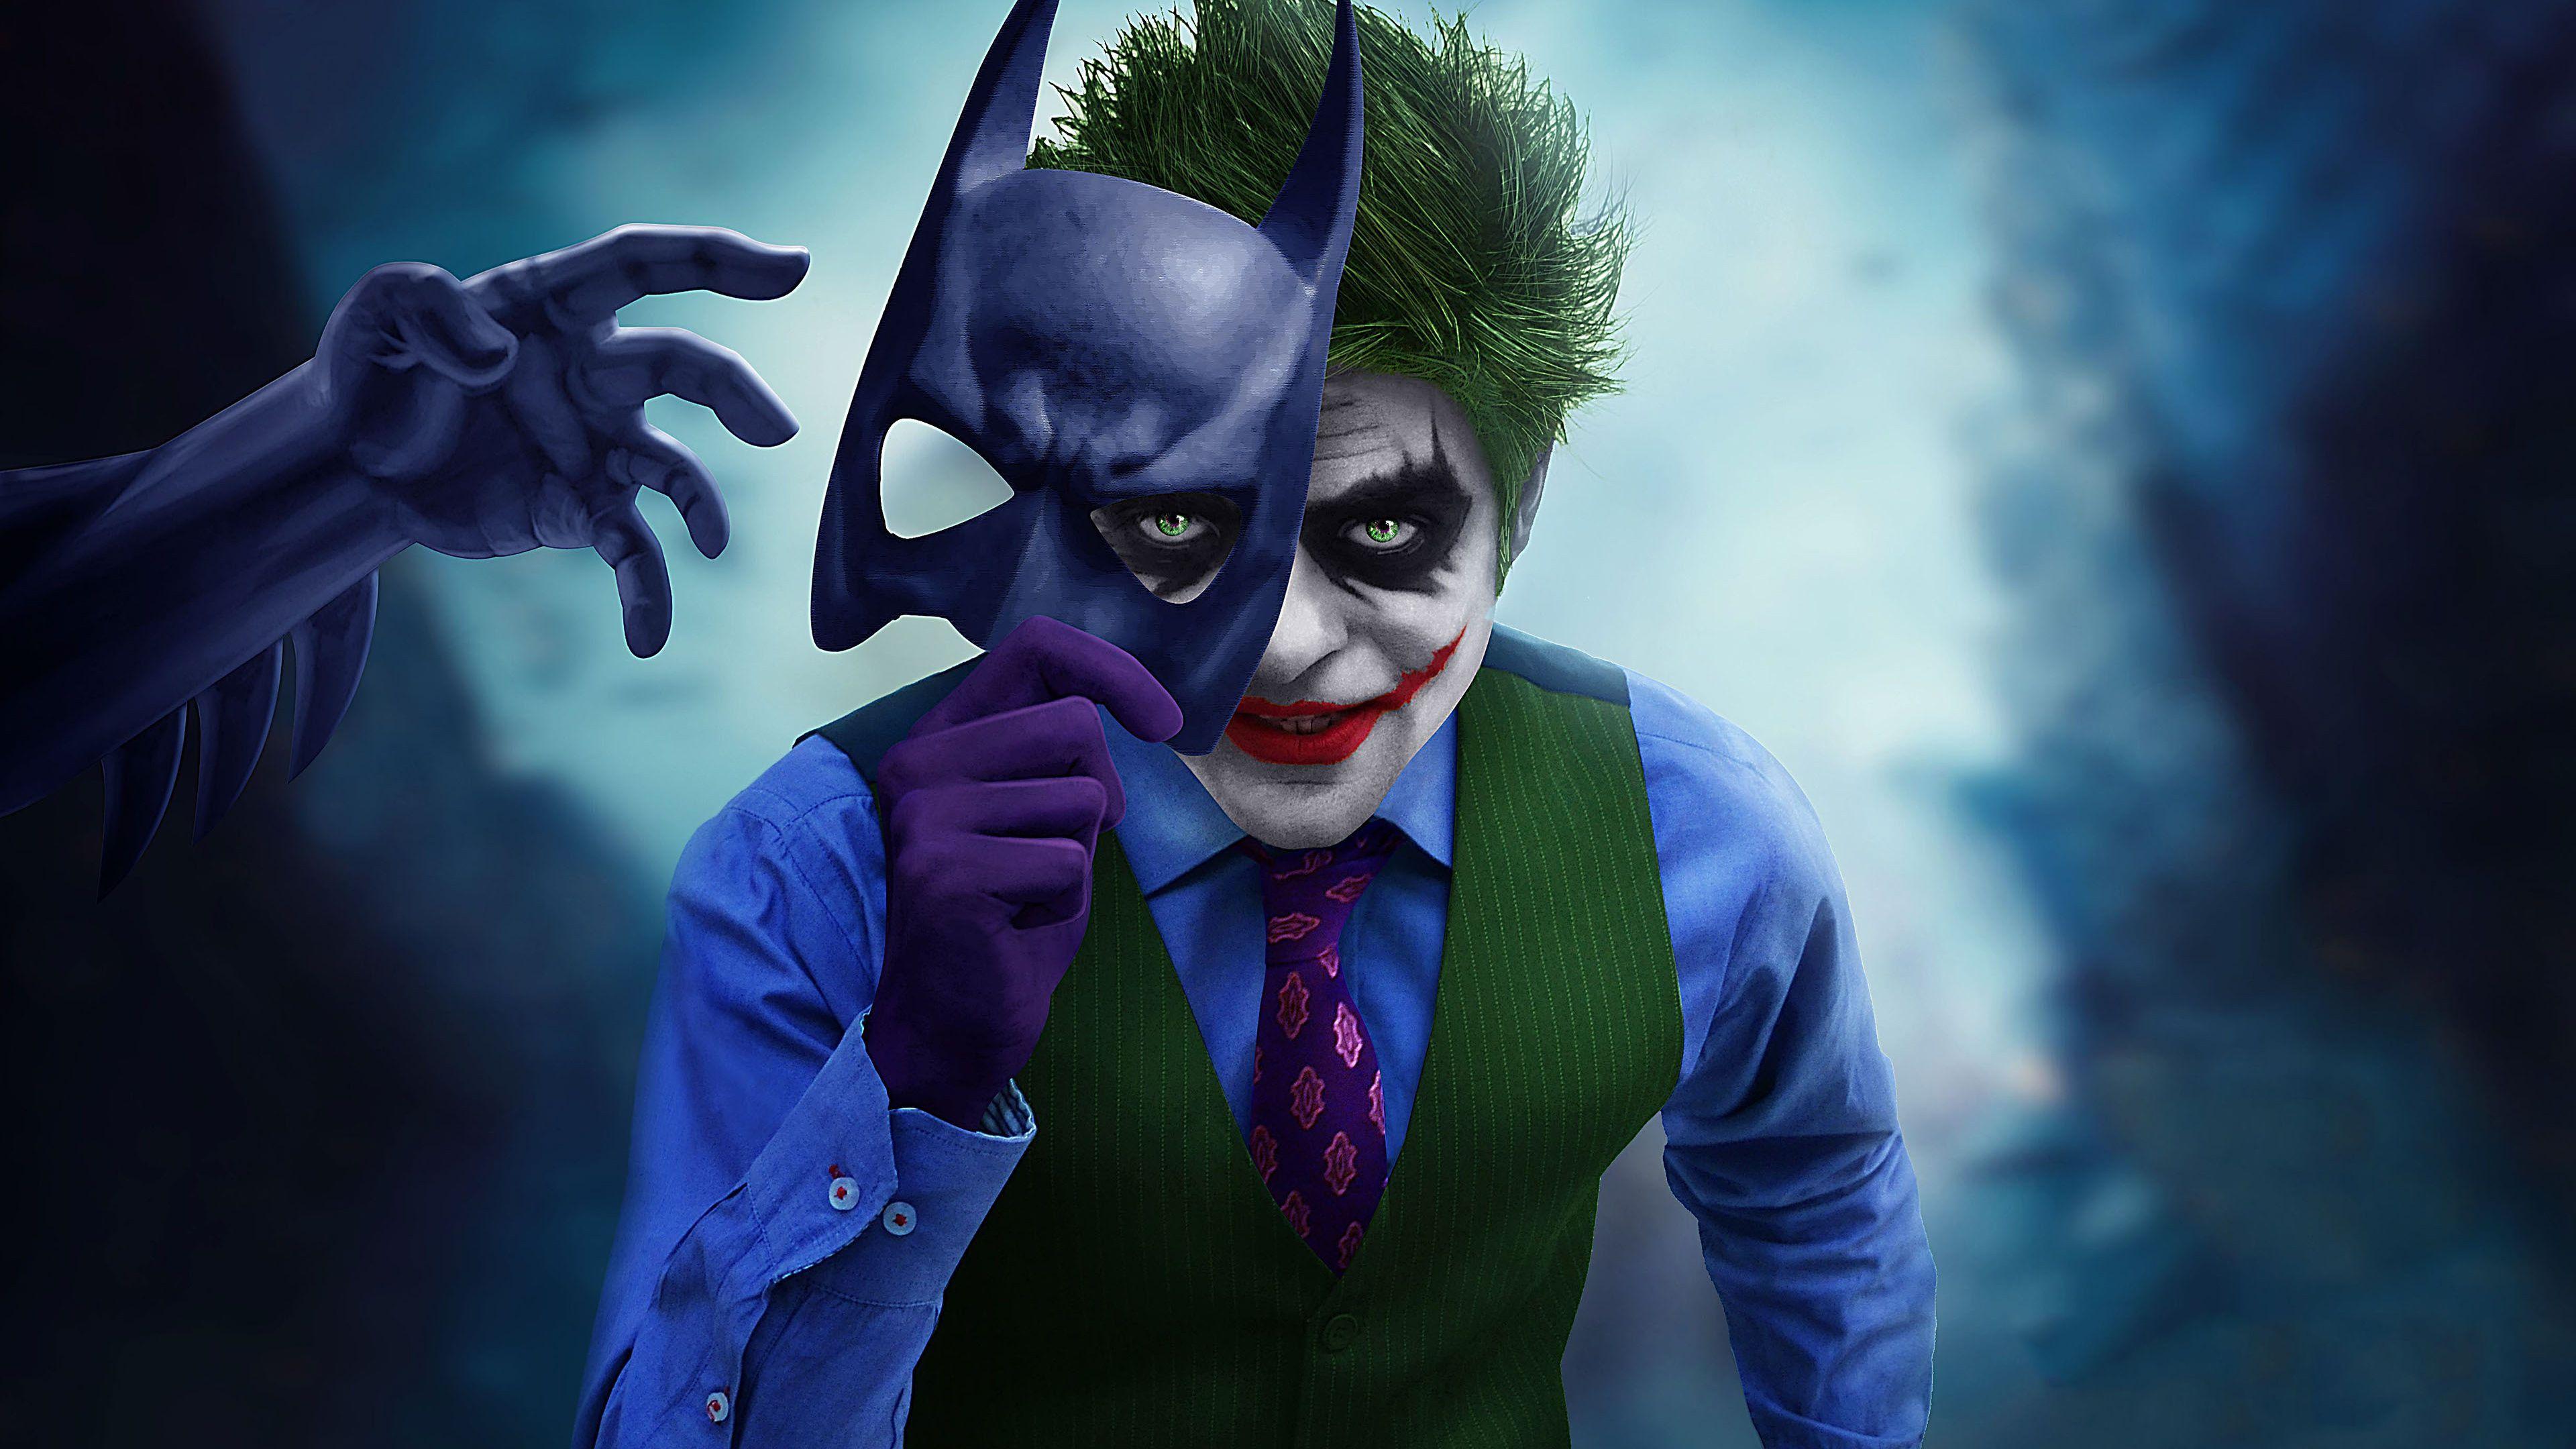 Joker Killing Joke 4k Ultra Hd Wallpapers Top Free Joker Killing Joke 4k Ultra Hd Backgrounds